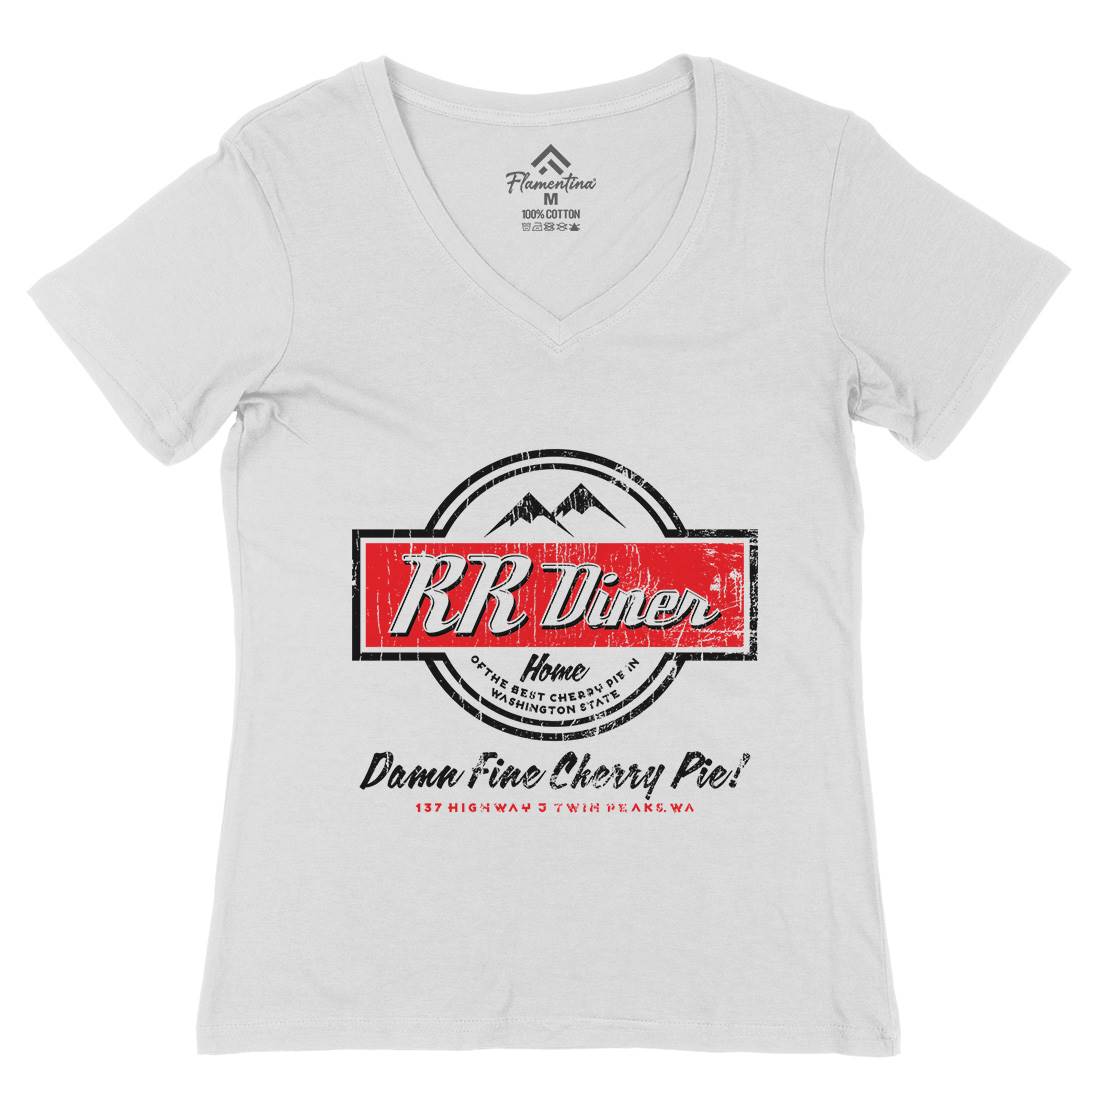 Double Rr Diner Womens Organic V-Neck T-Shirt Horror D335